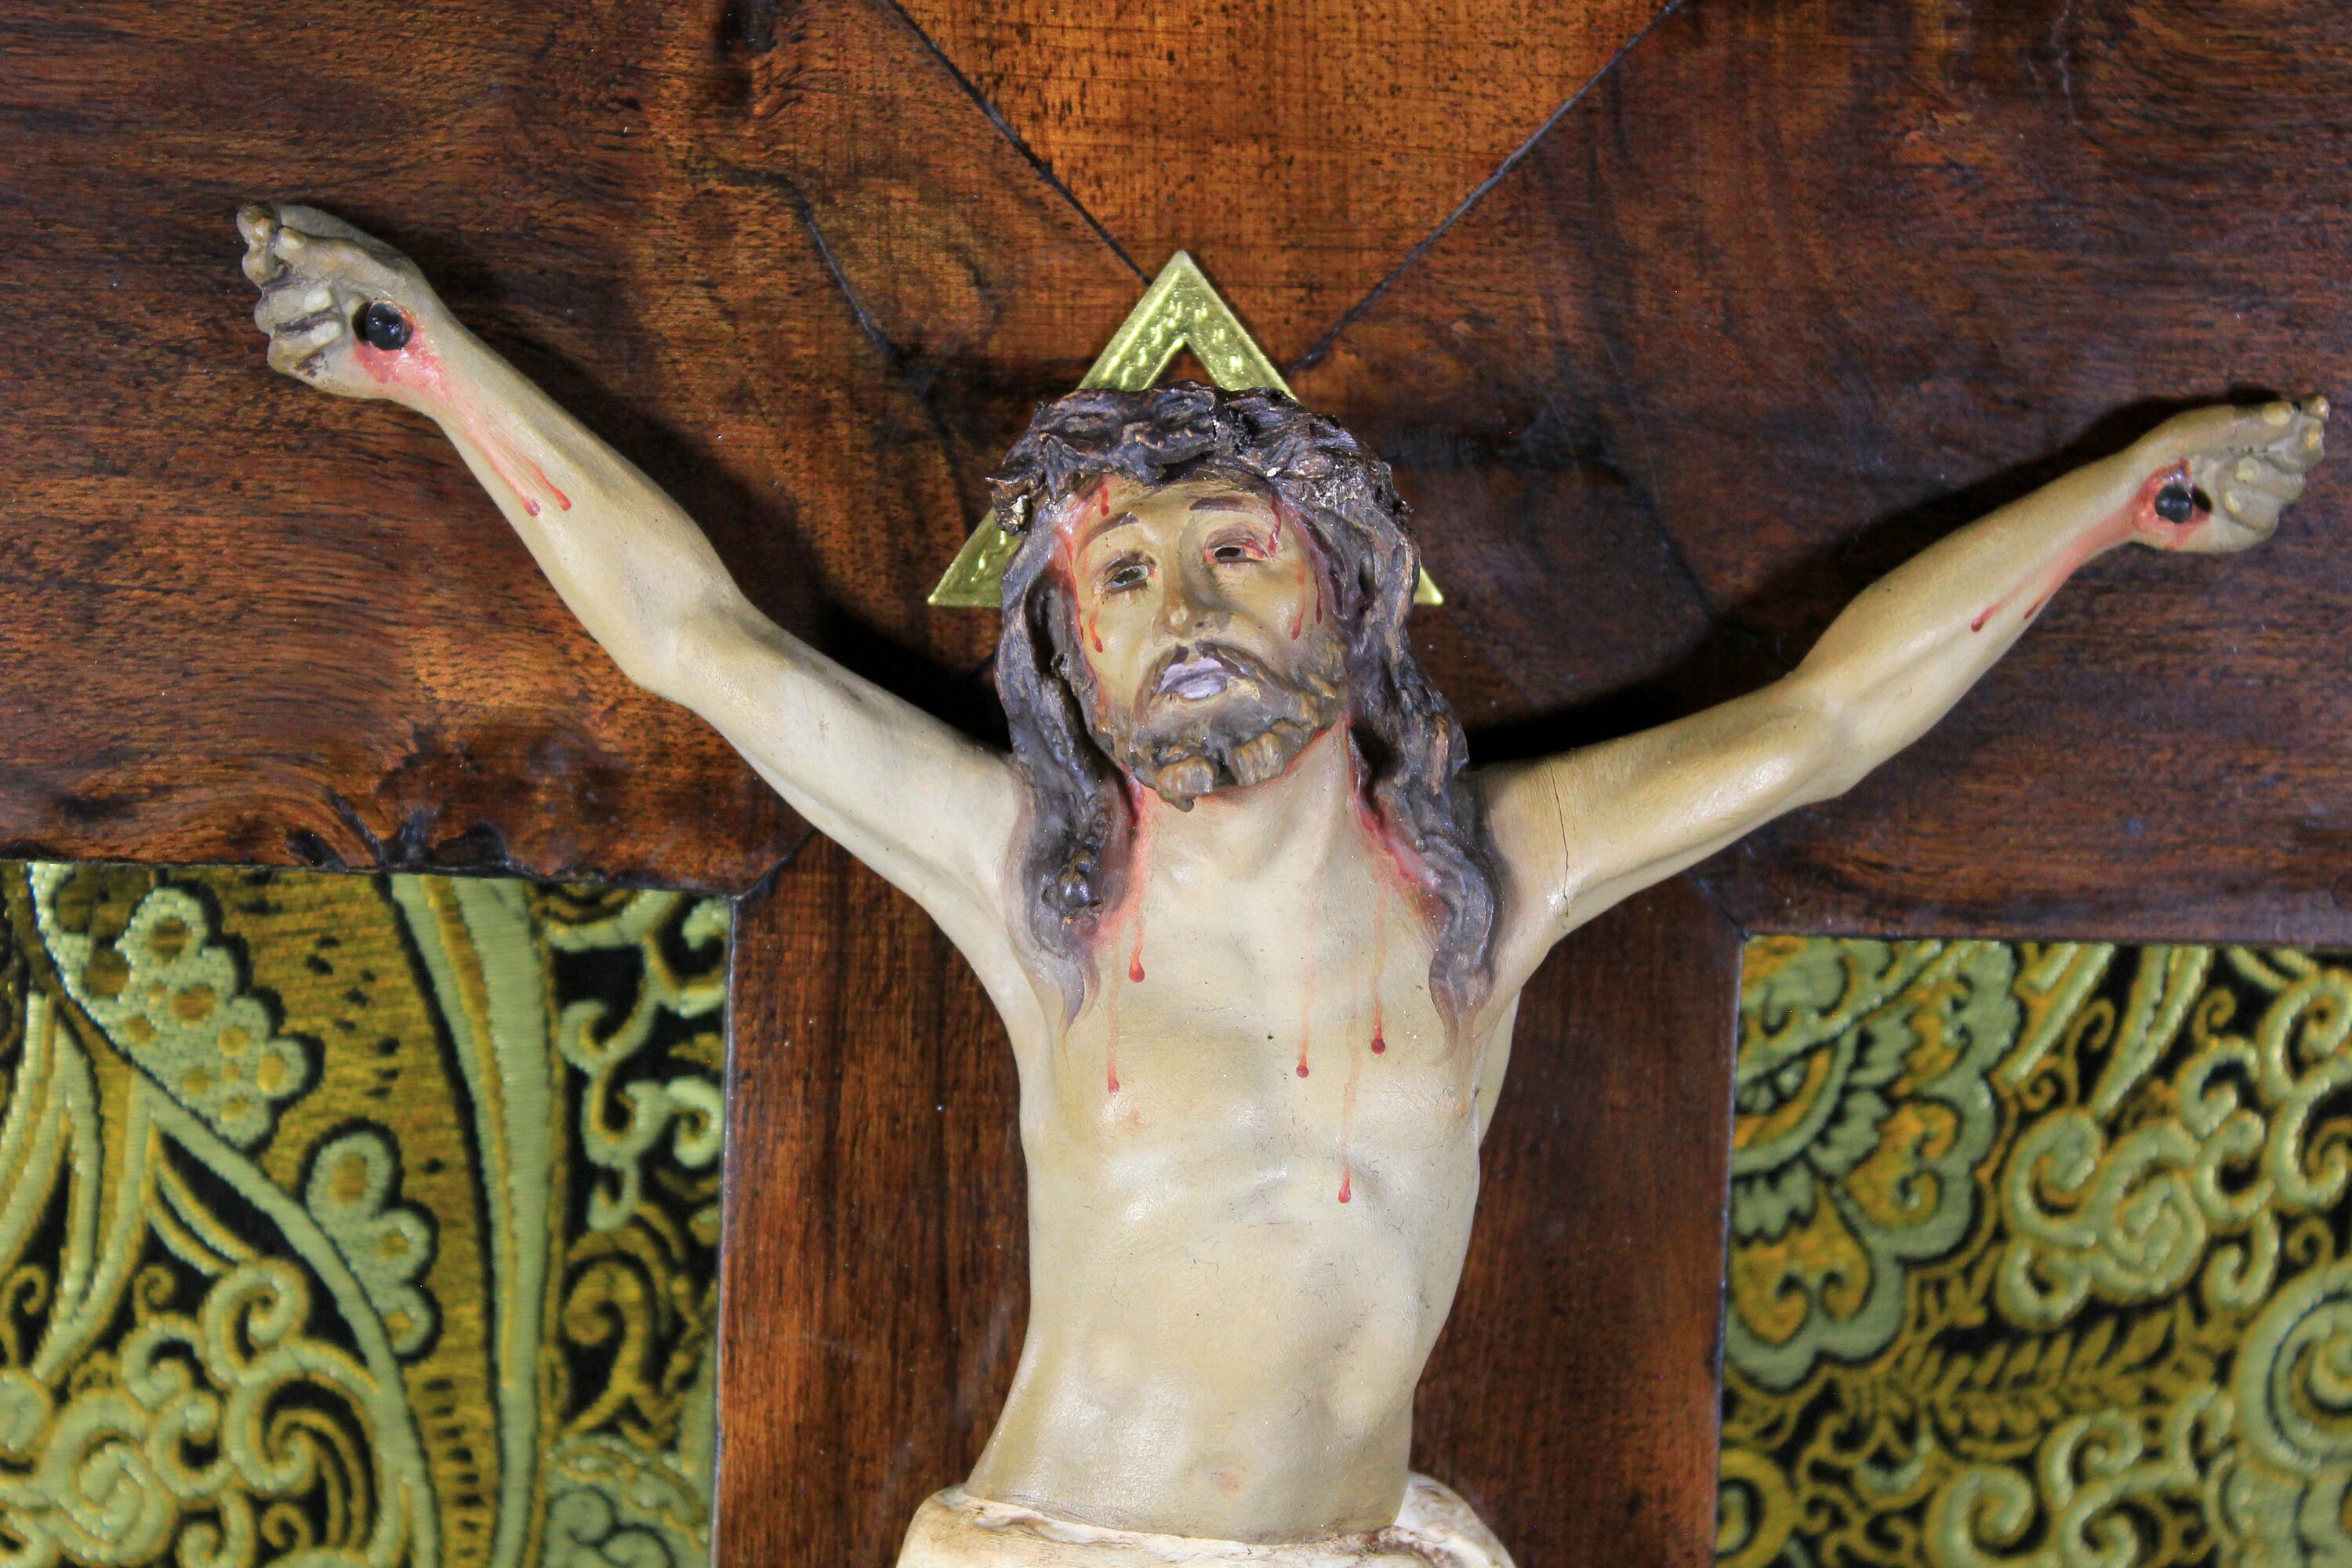 Crucifijo hecho a mano Cruz de pared, antiguas cruces católicas santas,  placa de talla floral de Jesucristo, crucifijo católico colgante,  decoración